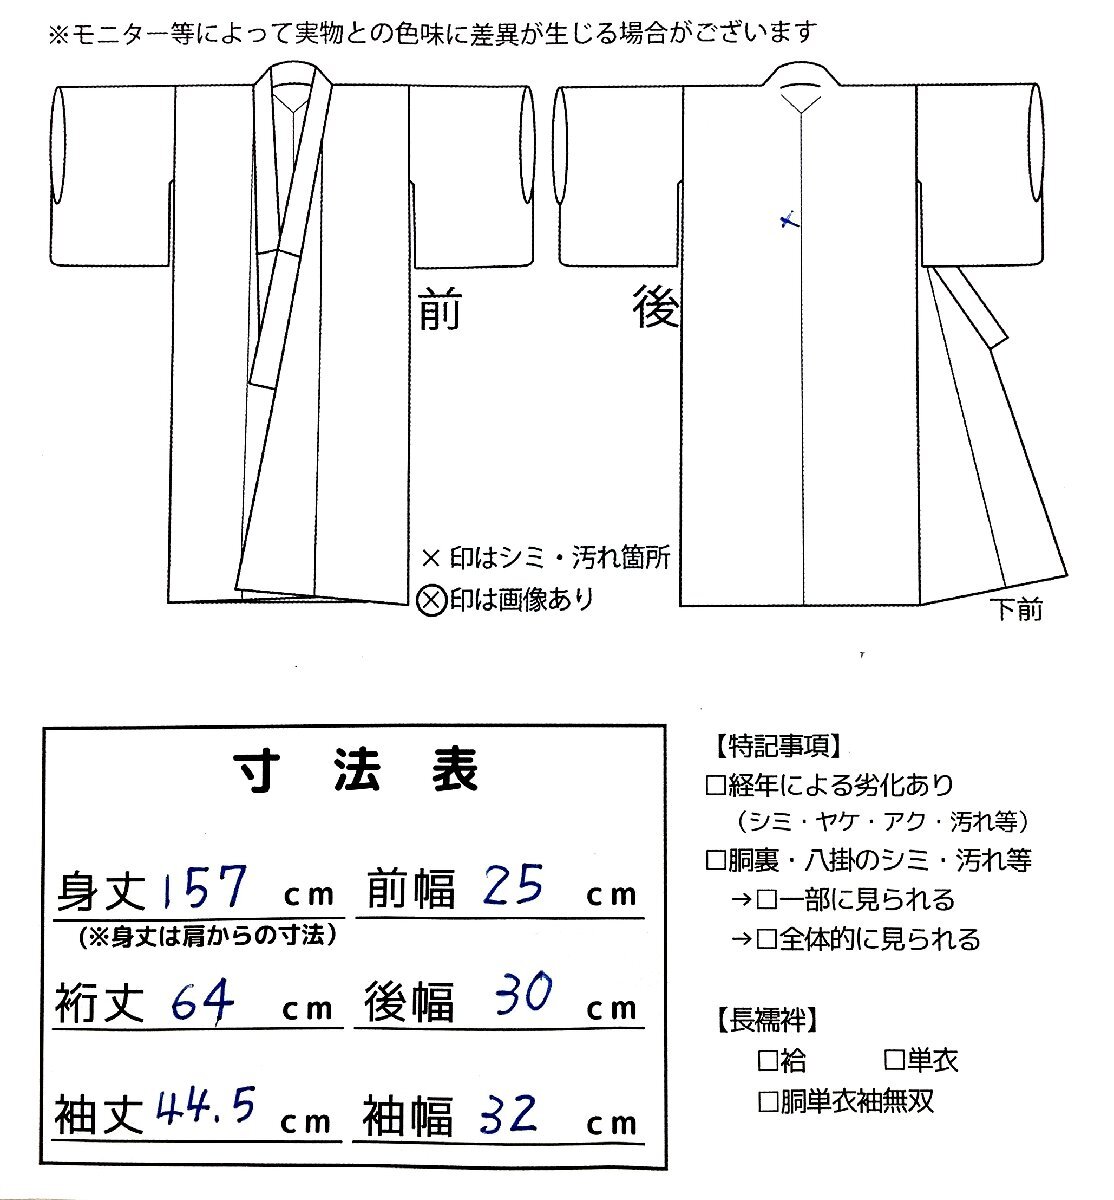  кимоно cocon* однотонная ткань одиночный . лето кимоно . длина 166.68 натуральный шелк темно-синий серия один tsu. лето предмет obi * мелкие вещи продается отдельно [4-30-5K-0150-t]